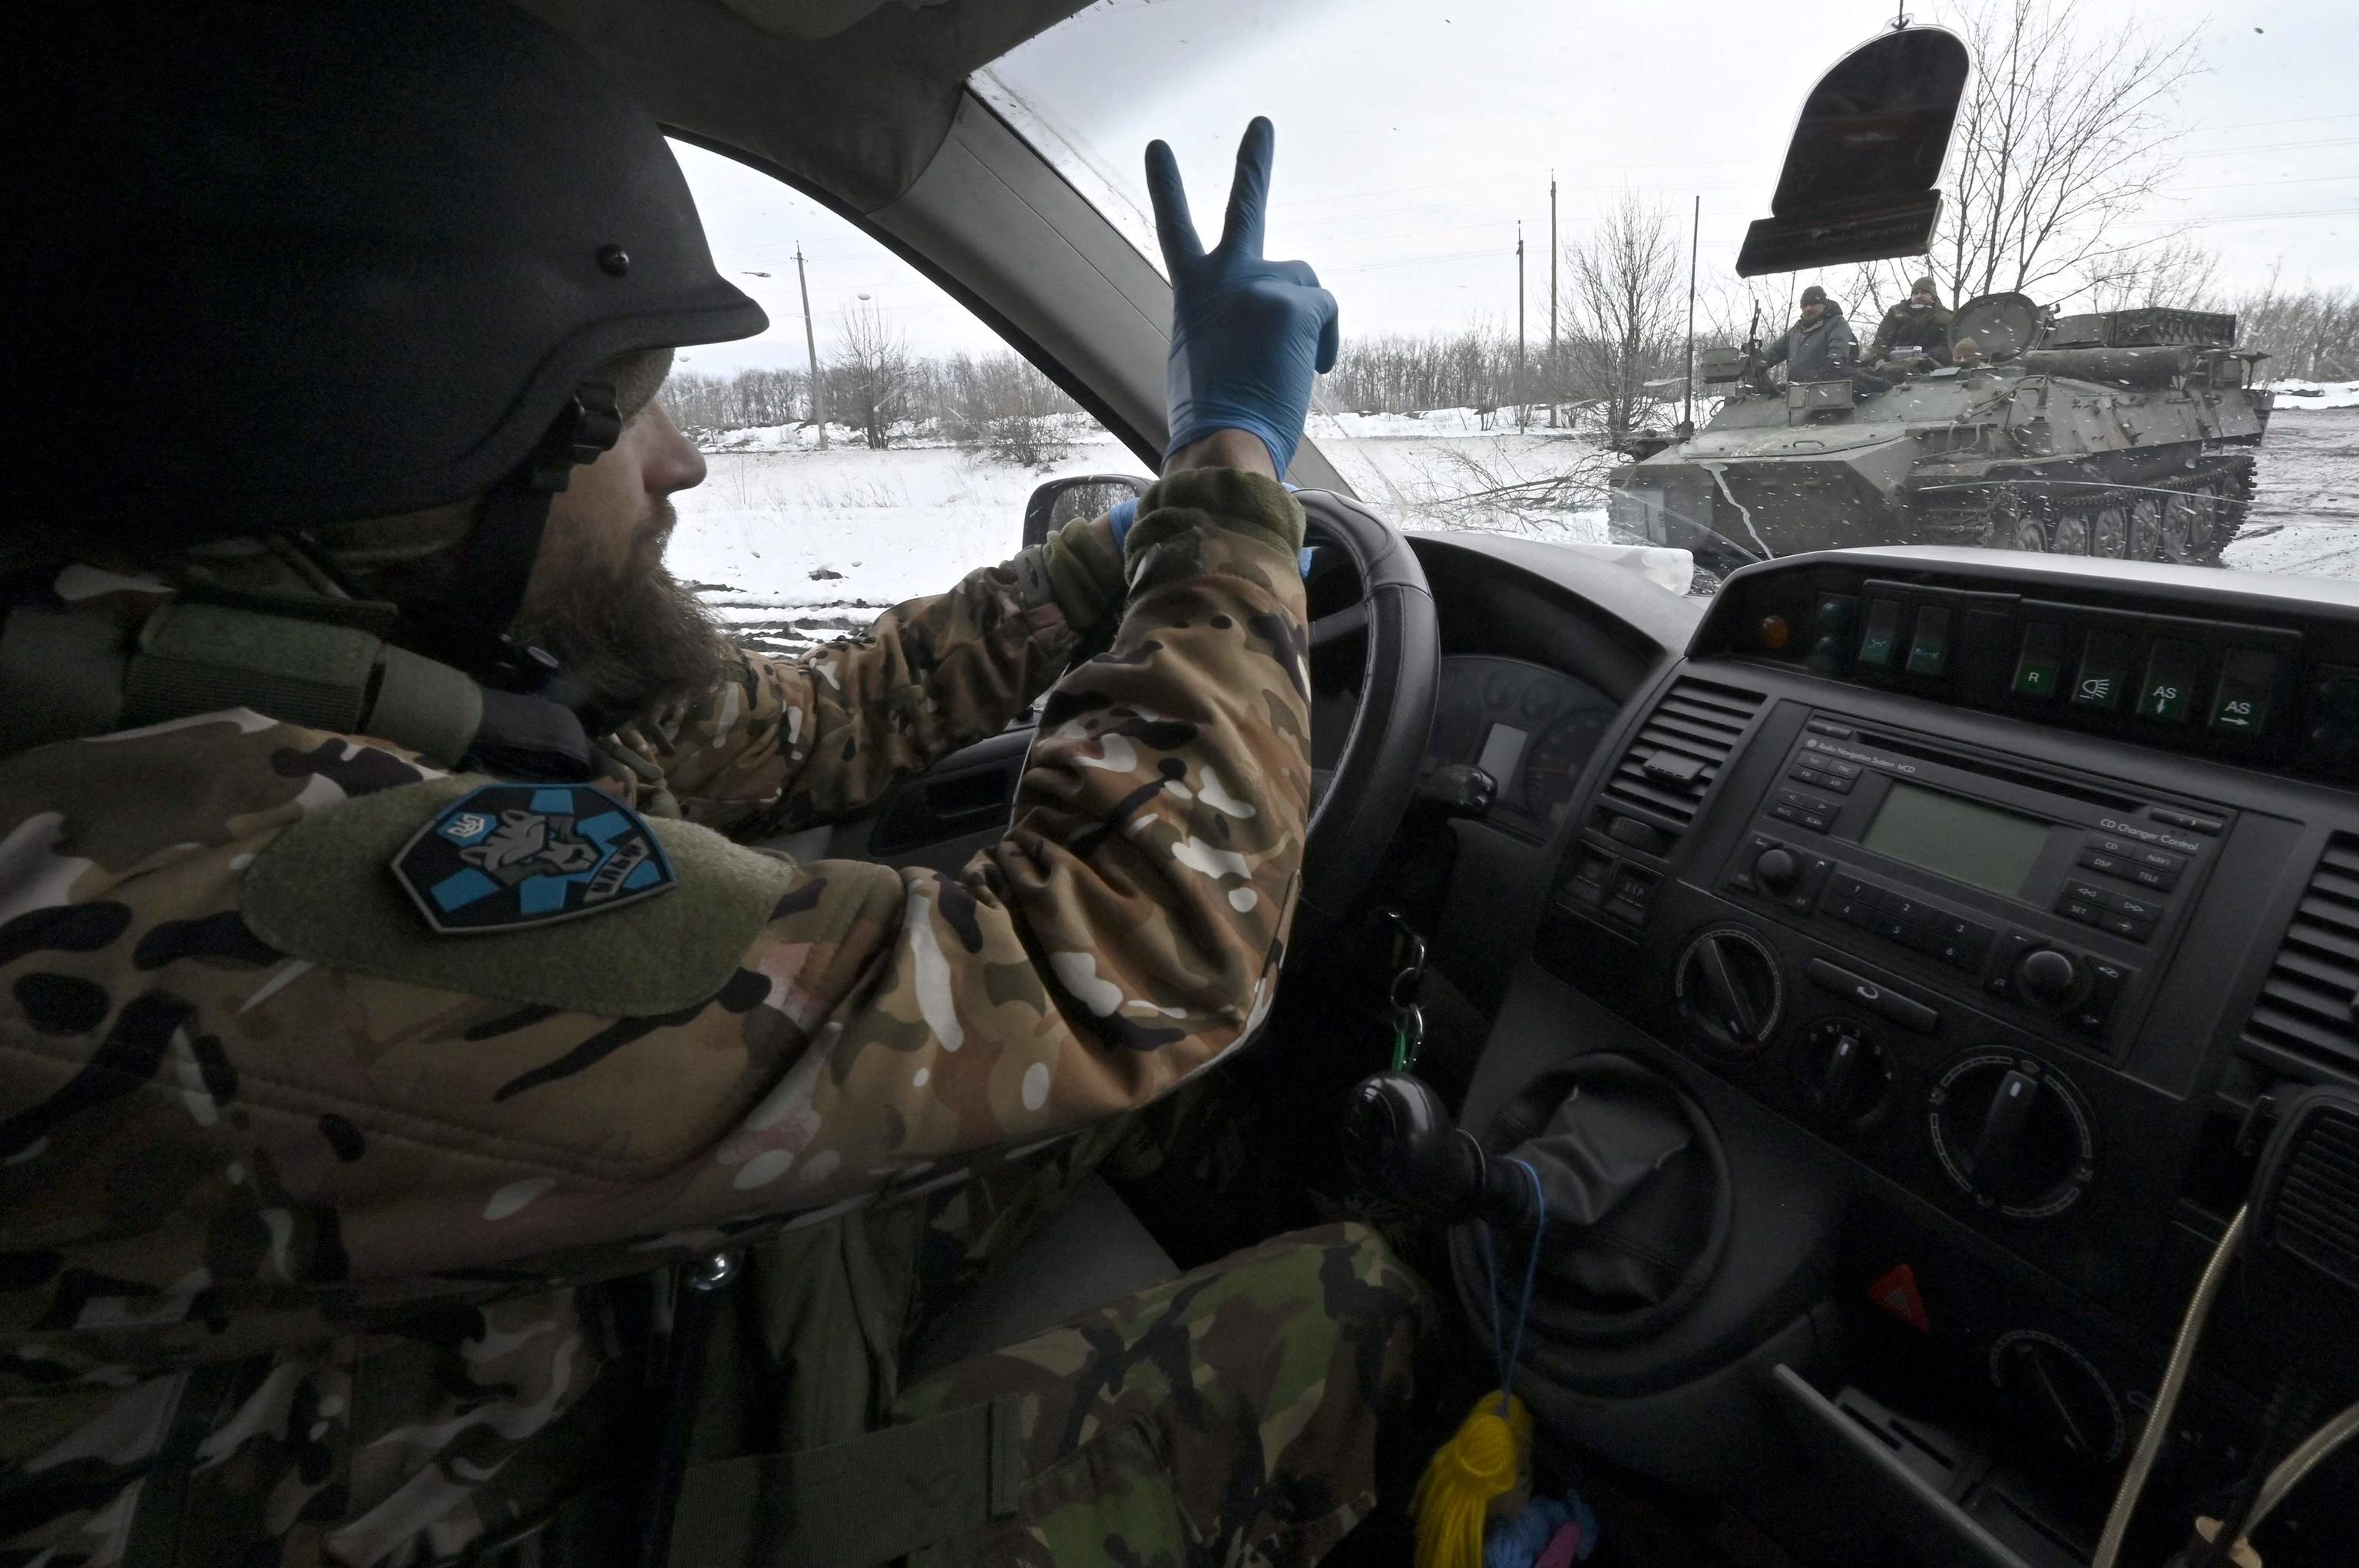 Un conductor de una ambulancia del Batallón de Lobos Da Vinci saluda a sus compañeros mientras conduce por una carretera cercana a la línea del frente cerca de Bajmut, en la región de Donetsk, el 1 de abril de 2023, en medio de la invasión rusa de Ucrania. - Las carreteras se han convertido en lodazales por la nieve derretida, lo que hace que el viaje sea lento. La ambulancia está cubierta de barro desde las ruedas hasta el techo.